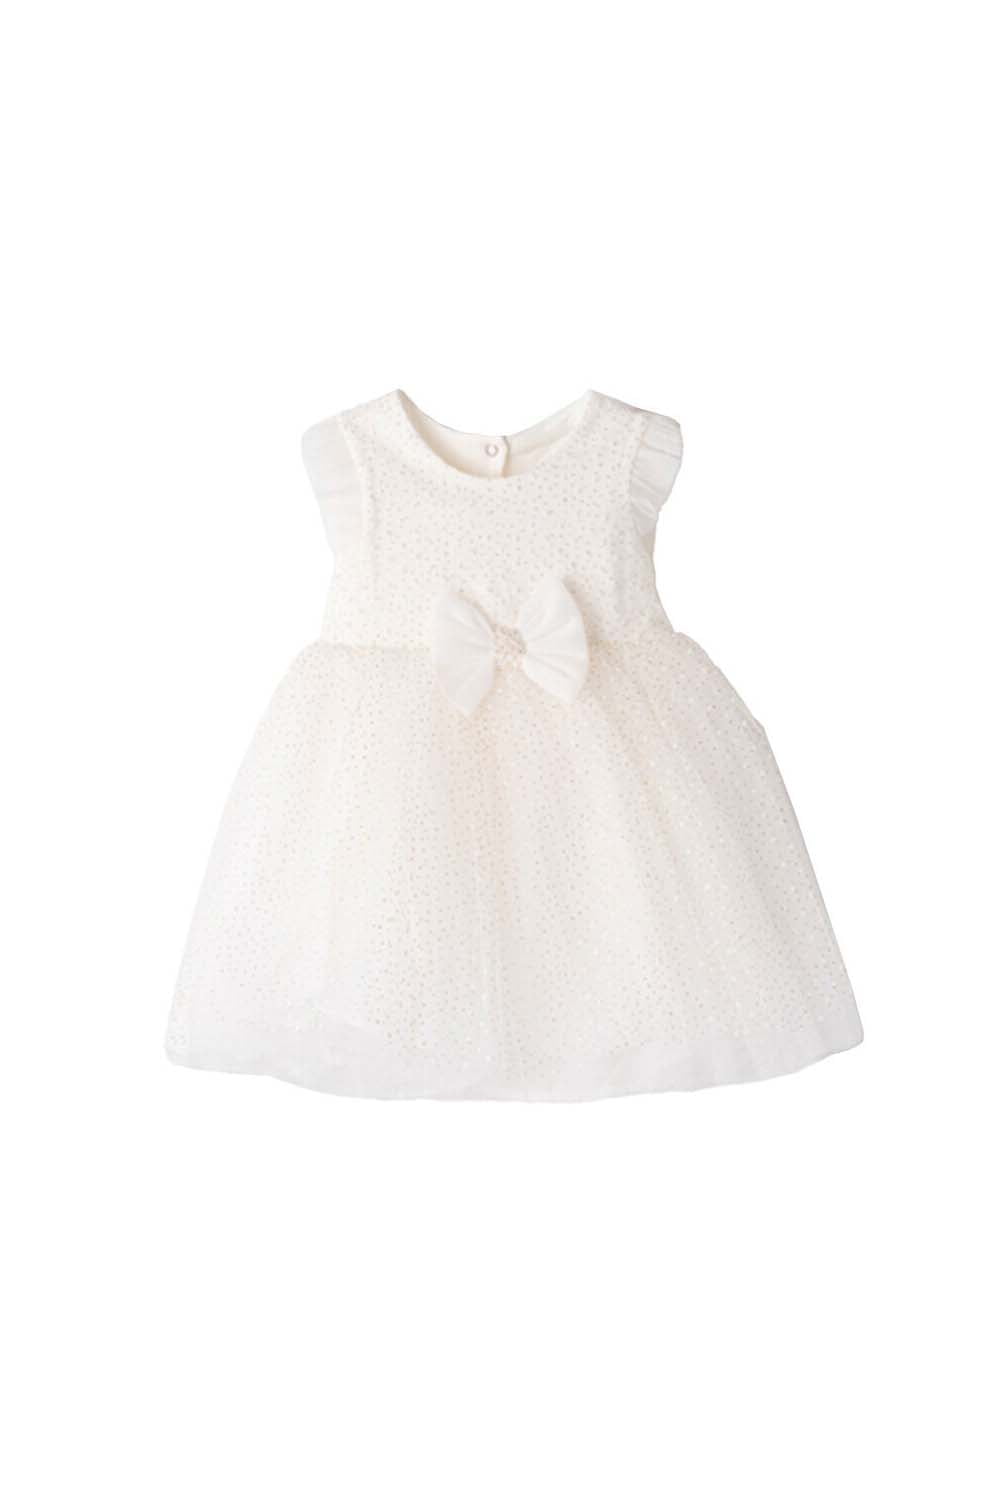 Παιδικό Φόρεμα Για Κορίτσι EBITA 242520 ΕΚΡΟΥ